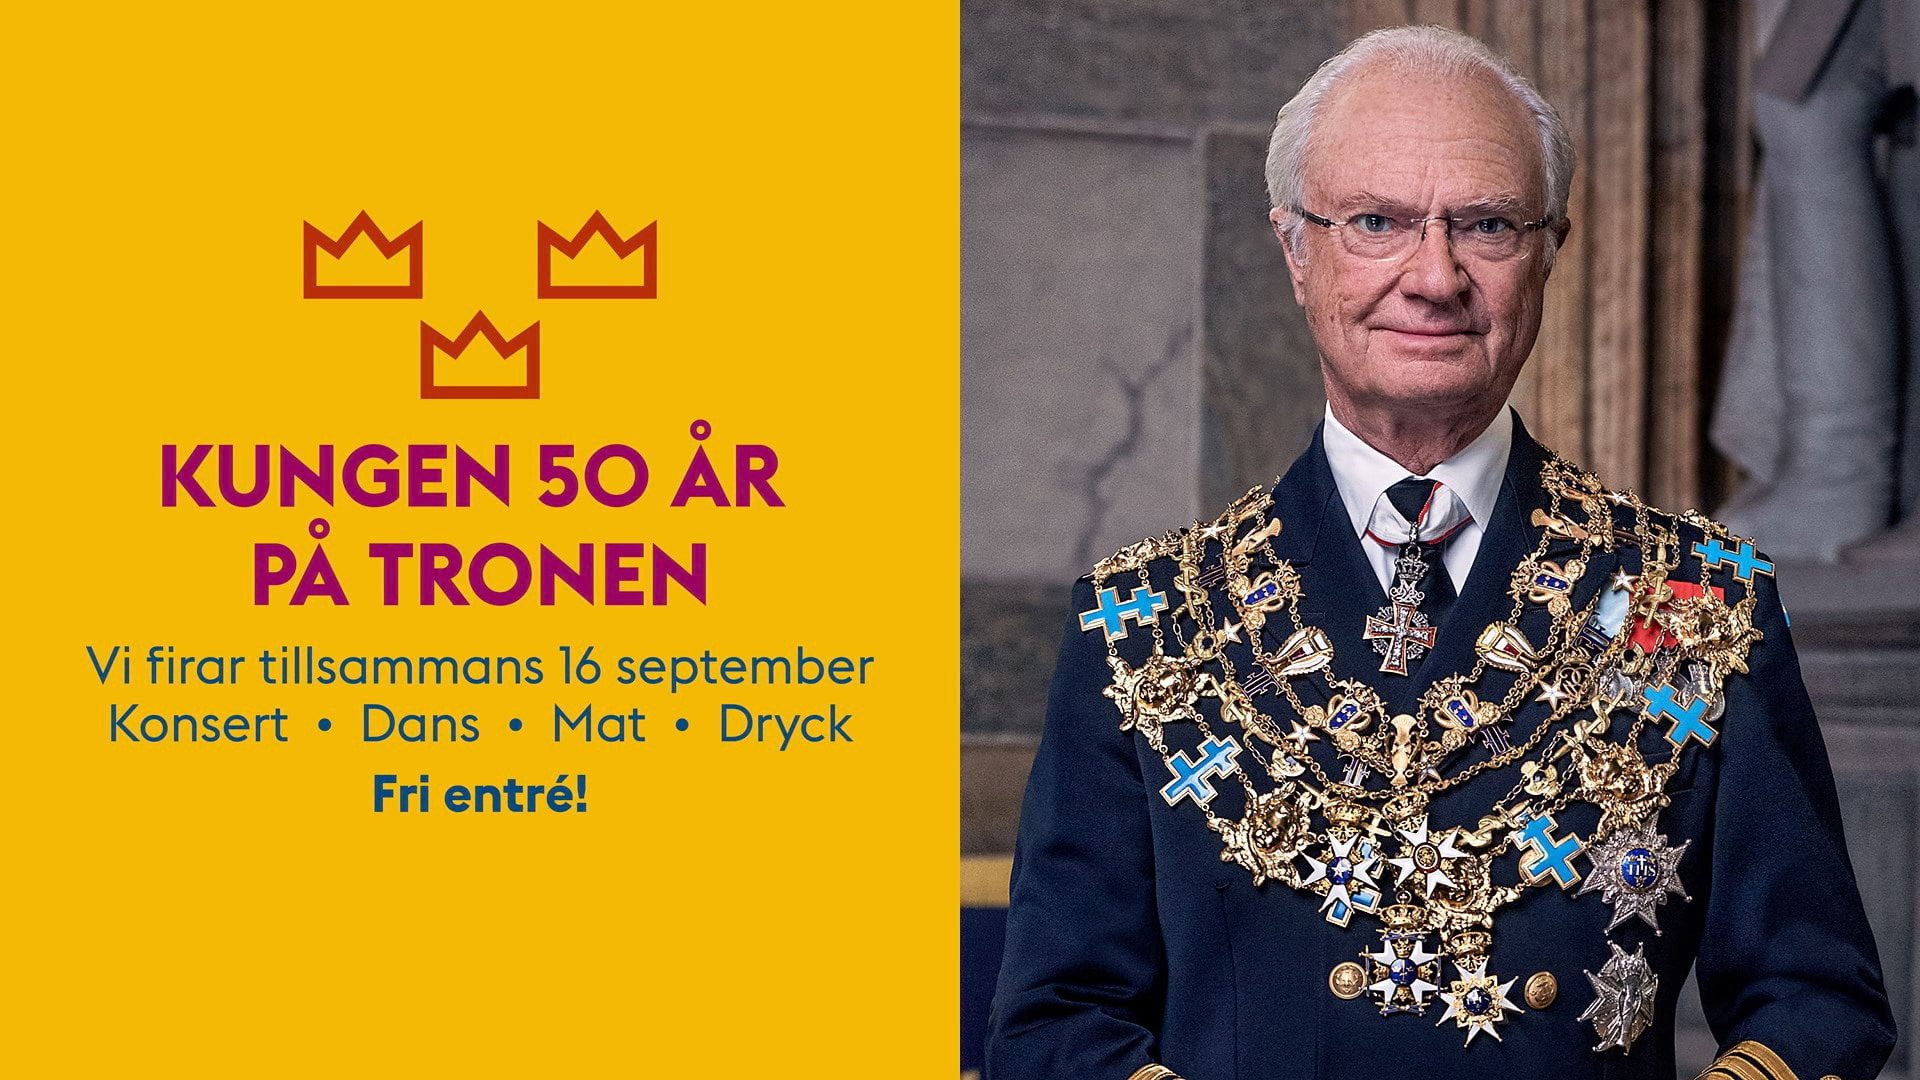 Kungen firas med pompa och ståt. Foto: Stockholms stad/pressbild